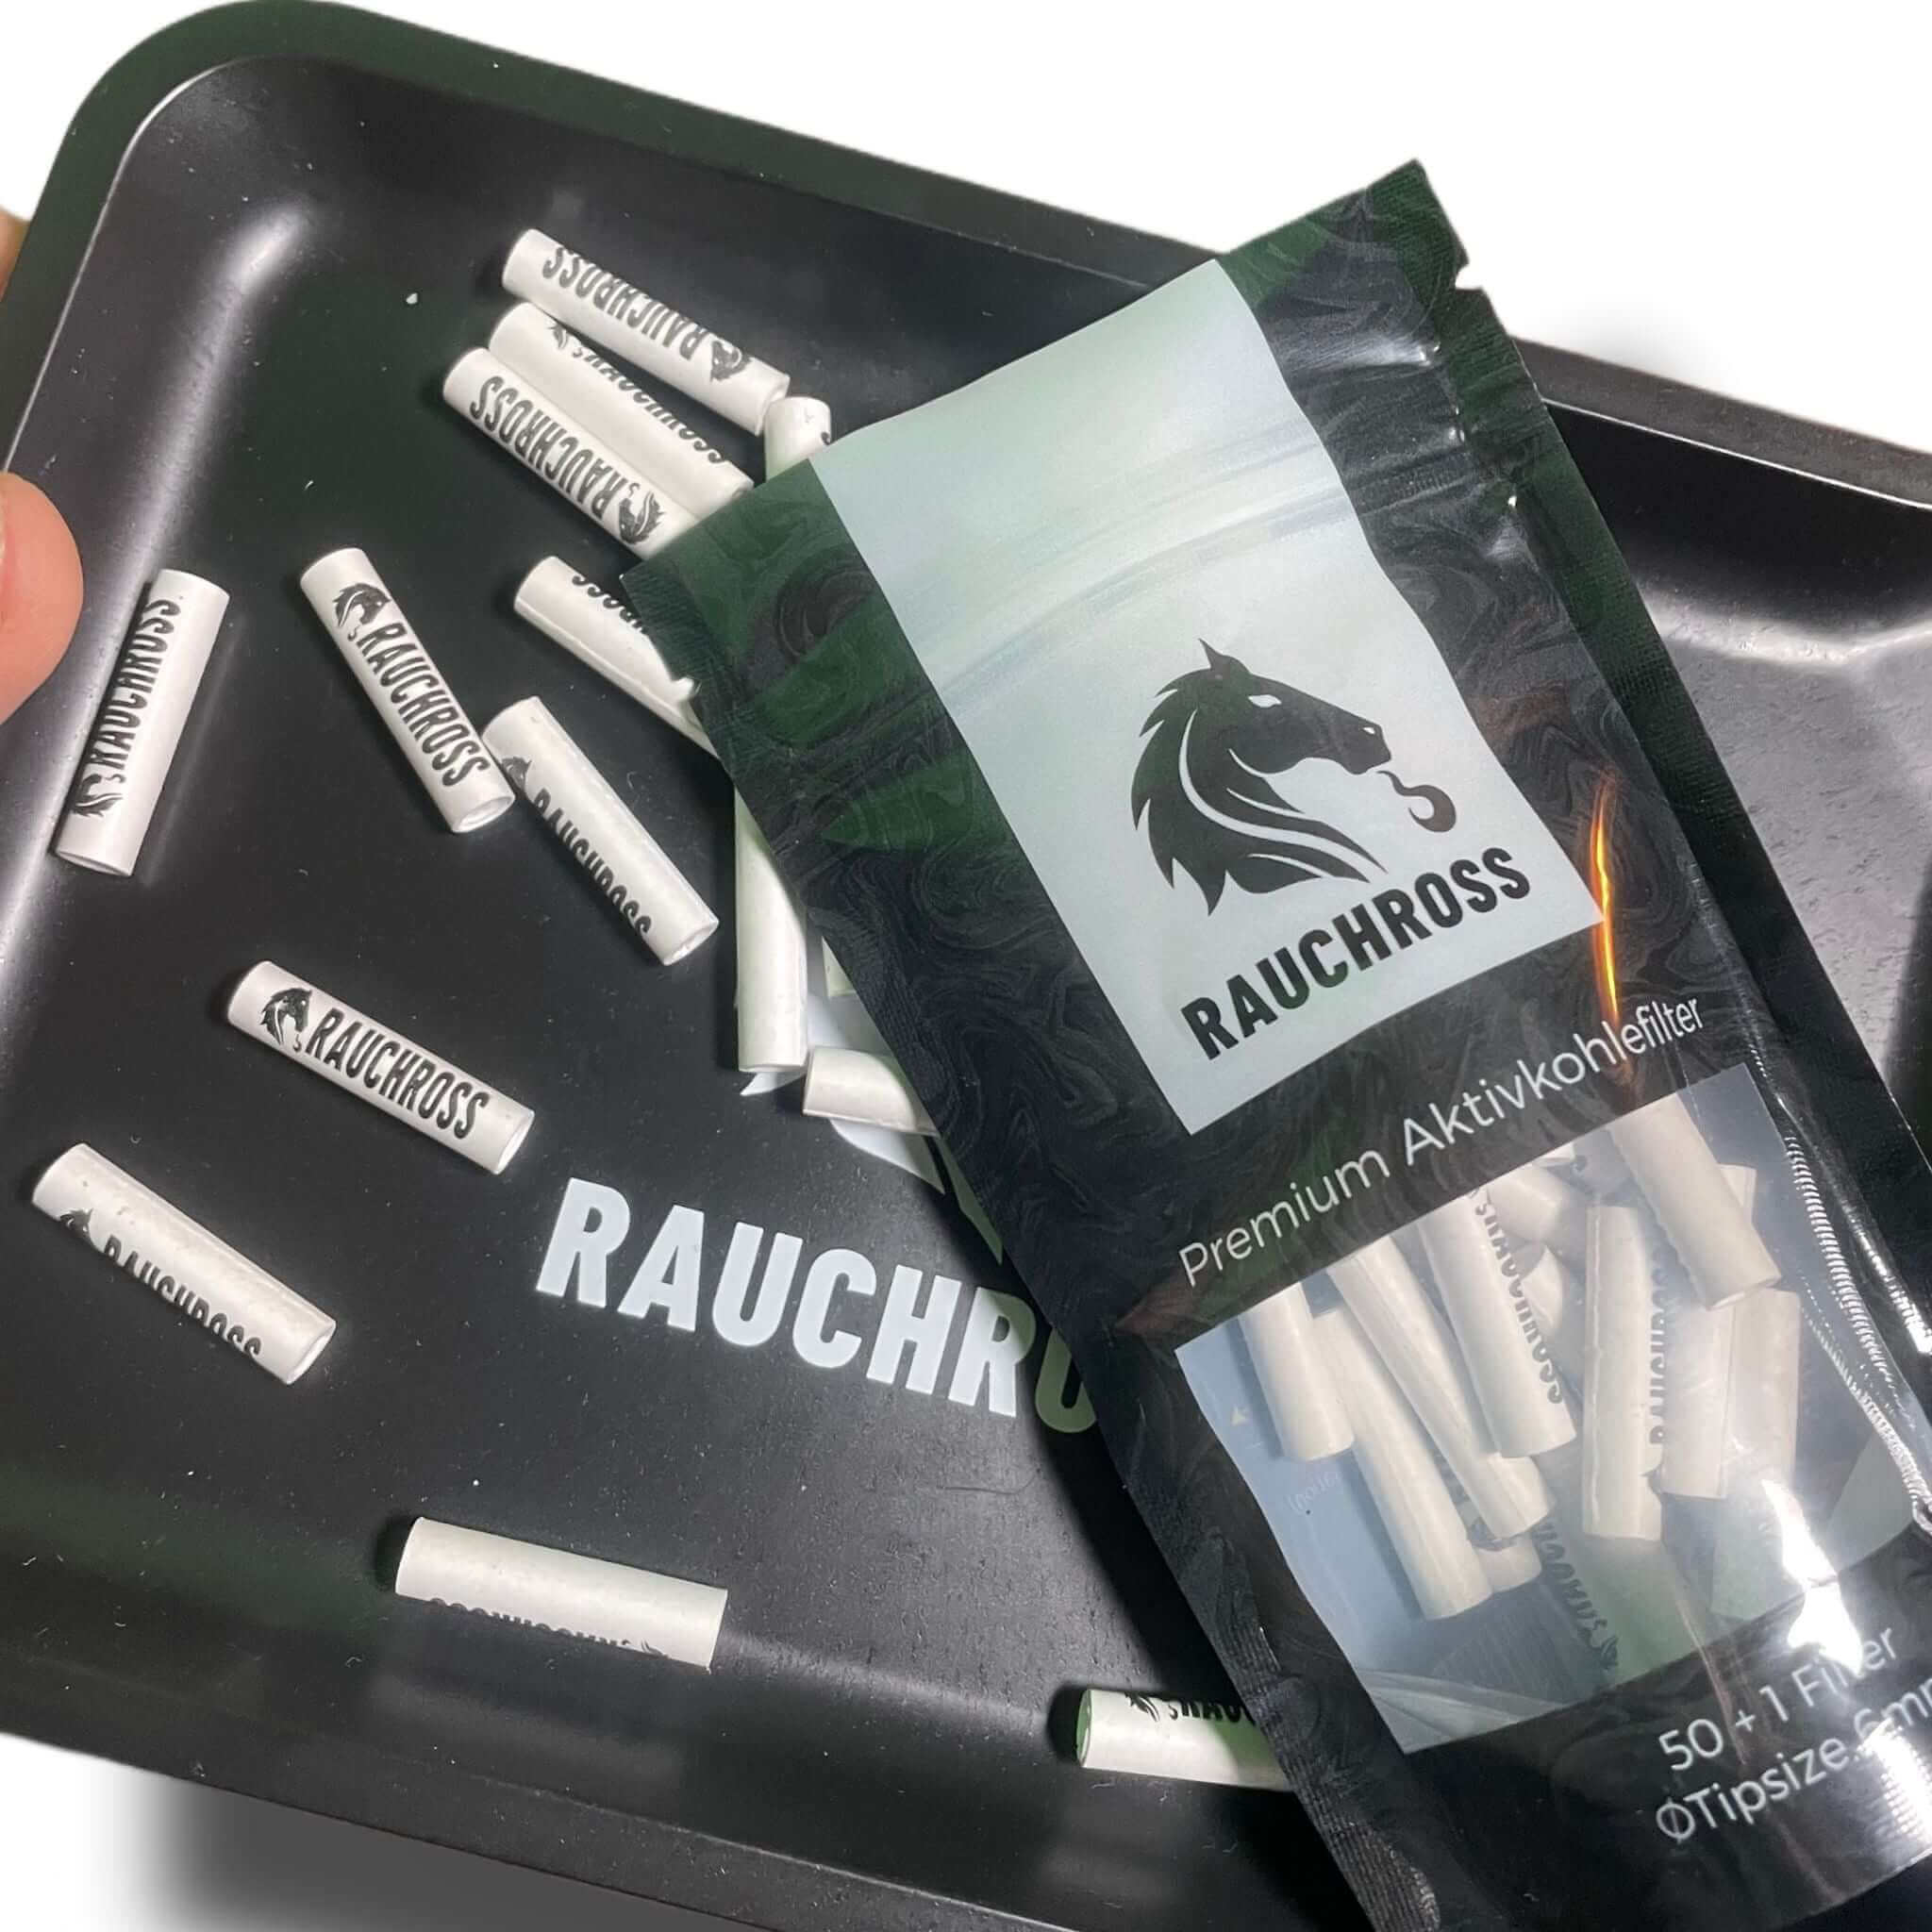 View details for Rauchross 51er Aktivkohle Filter Packung 6mm Rauchross 51er Aktivkohle Filter Packung 6mm